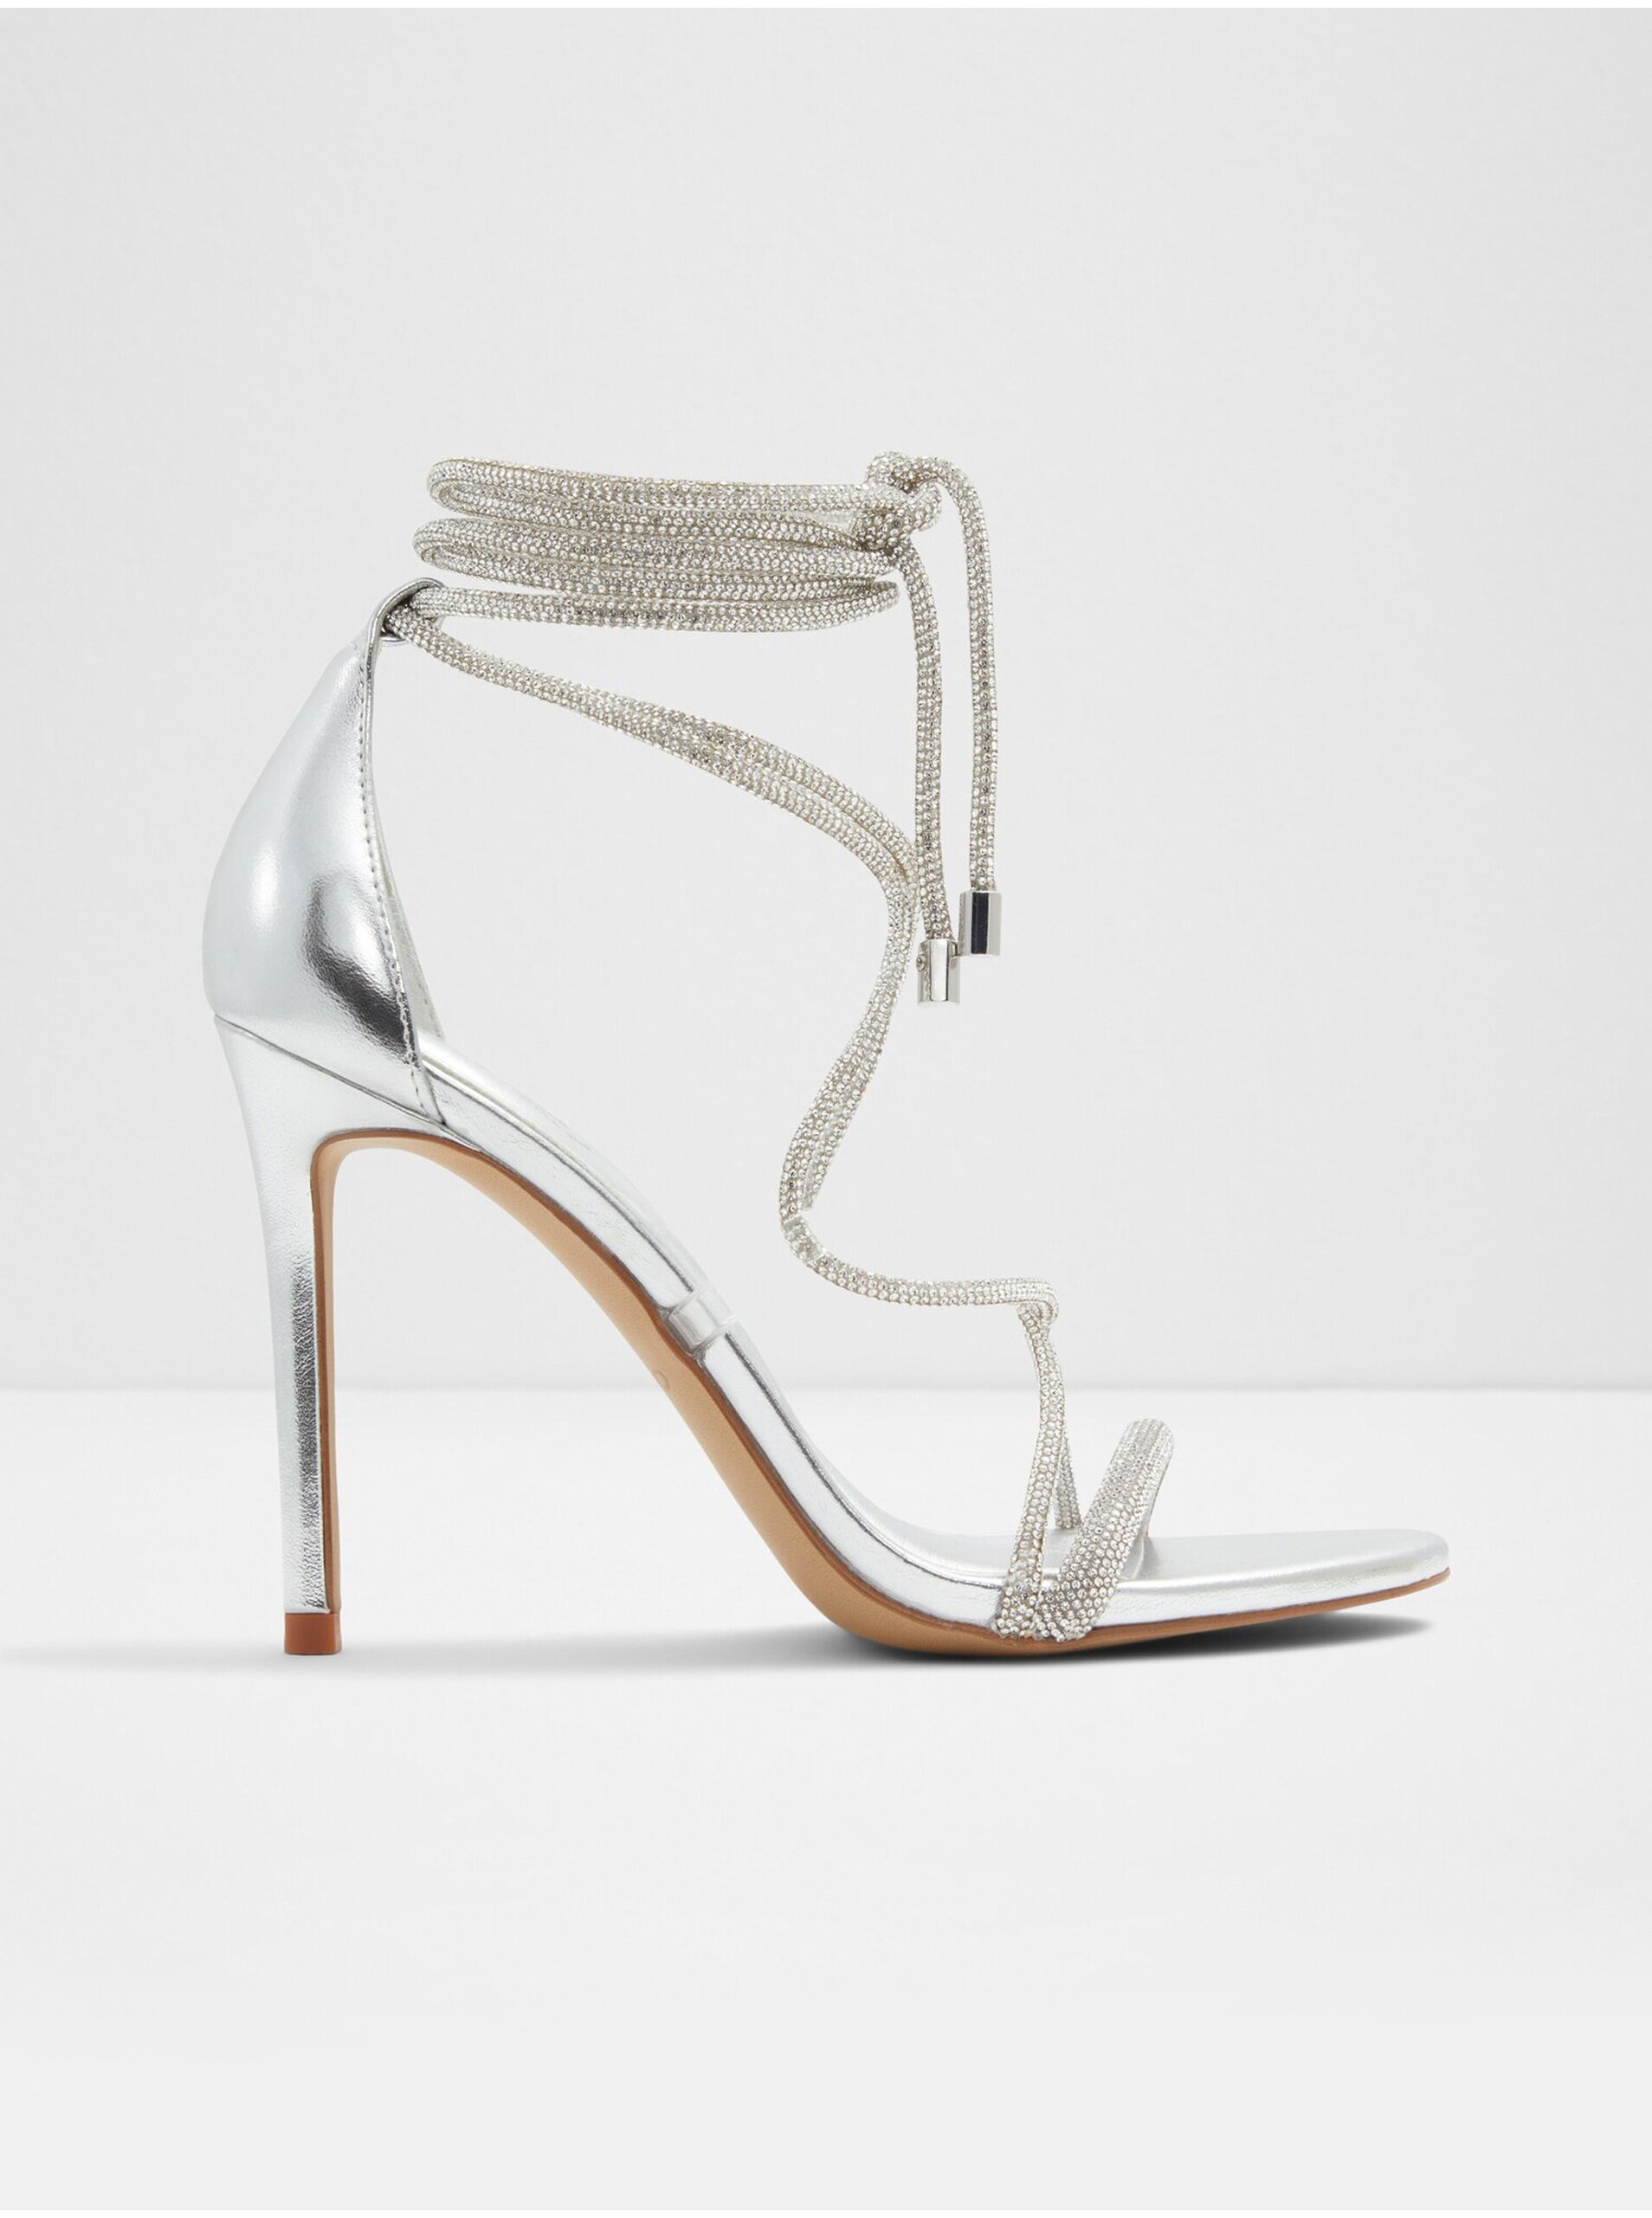 E-shop Dámské sandály na vysokém podpatku ve stříbrné barvě ALD0 Marly